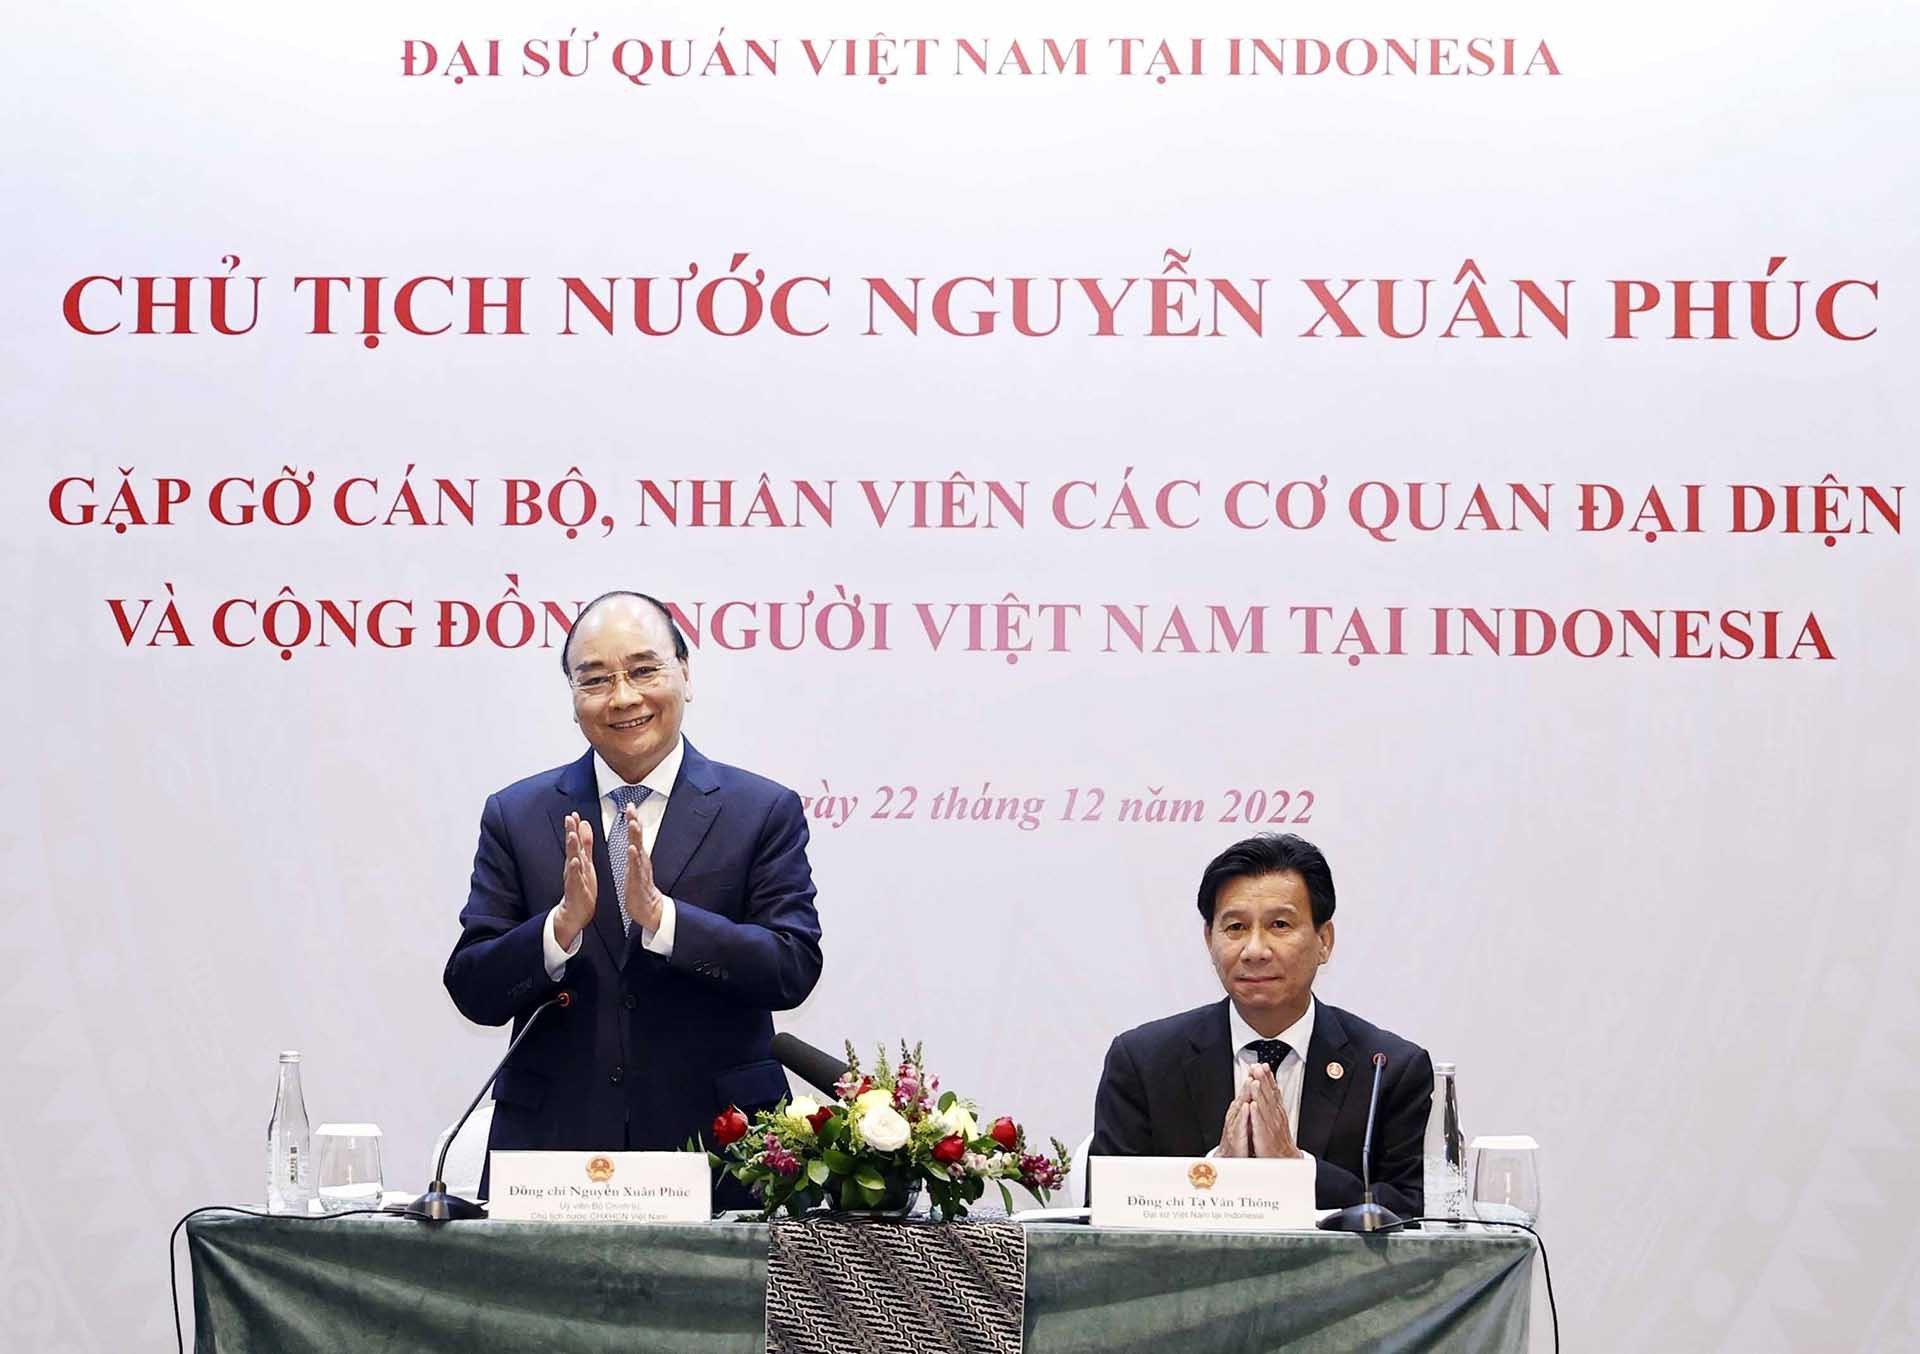 Chủ tịch nước Nguyễn Xuân Phúc tại buổi gặp gỡ cán bộ, nhân viên các cơ quan đại diện và đại diện cộng đồng người Việt Nam tại Indonesia. (Nguồn: TTXVN)